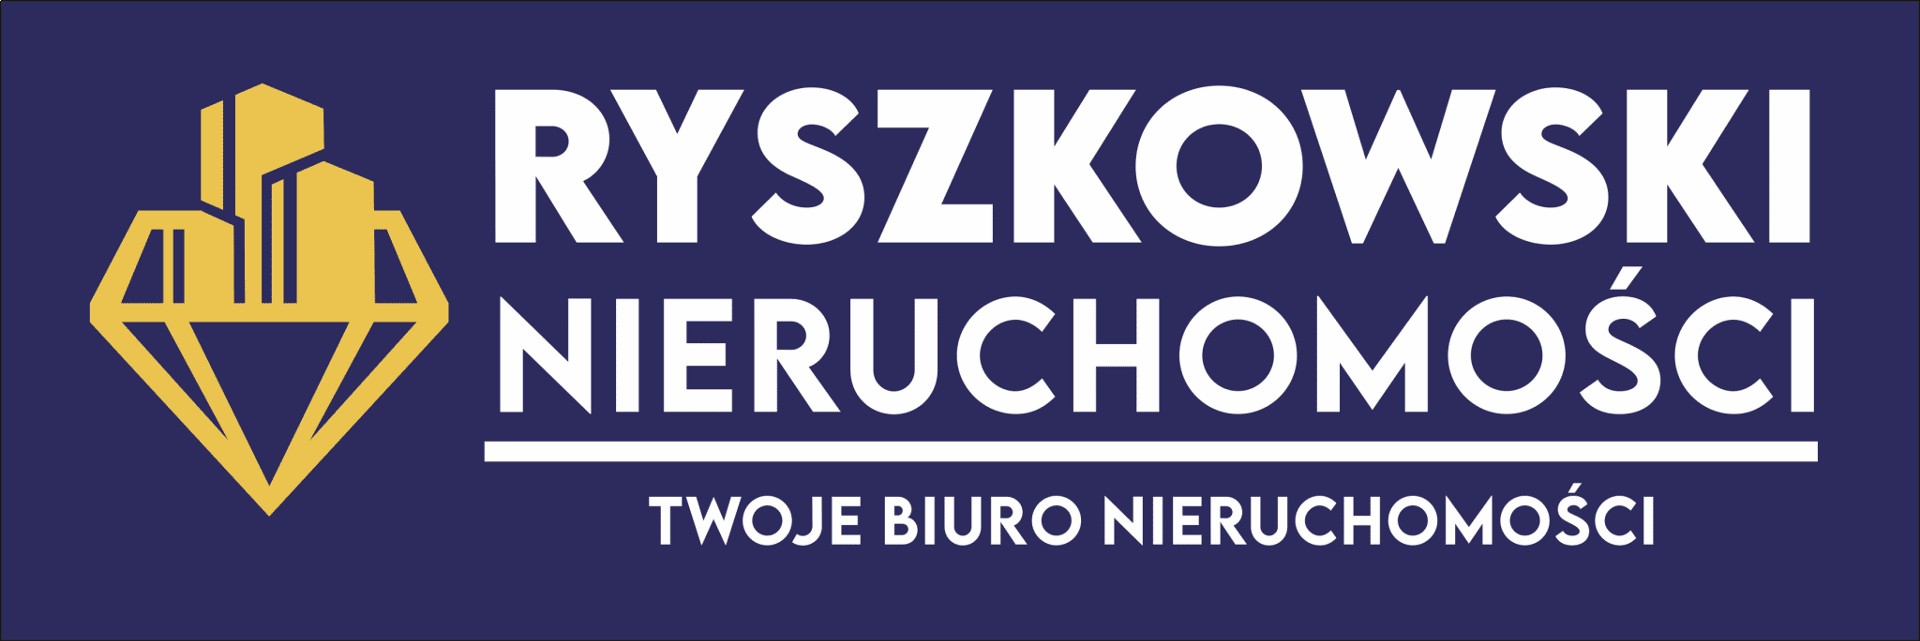 Logo Ryszkowski Nieruchomości